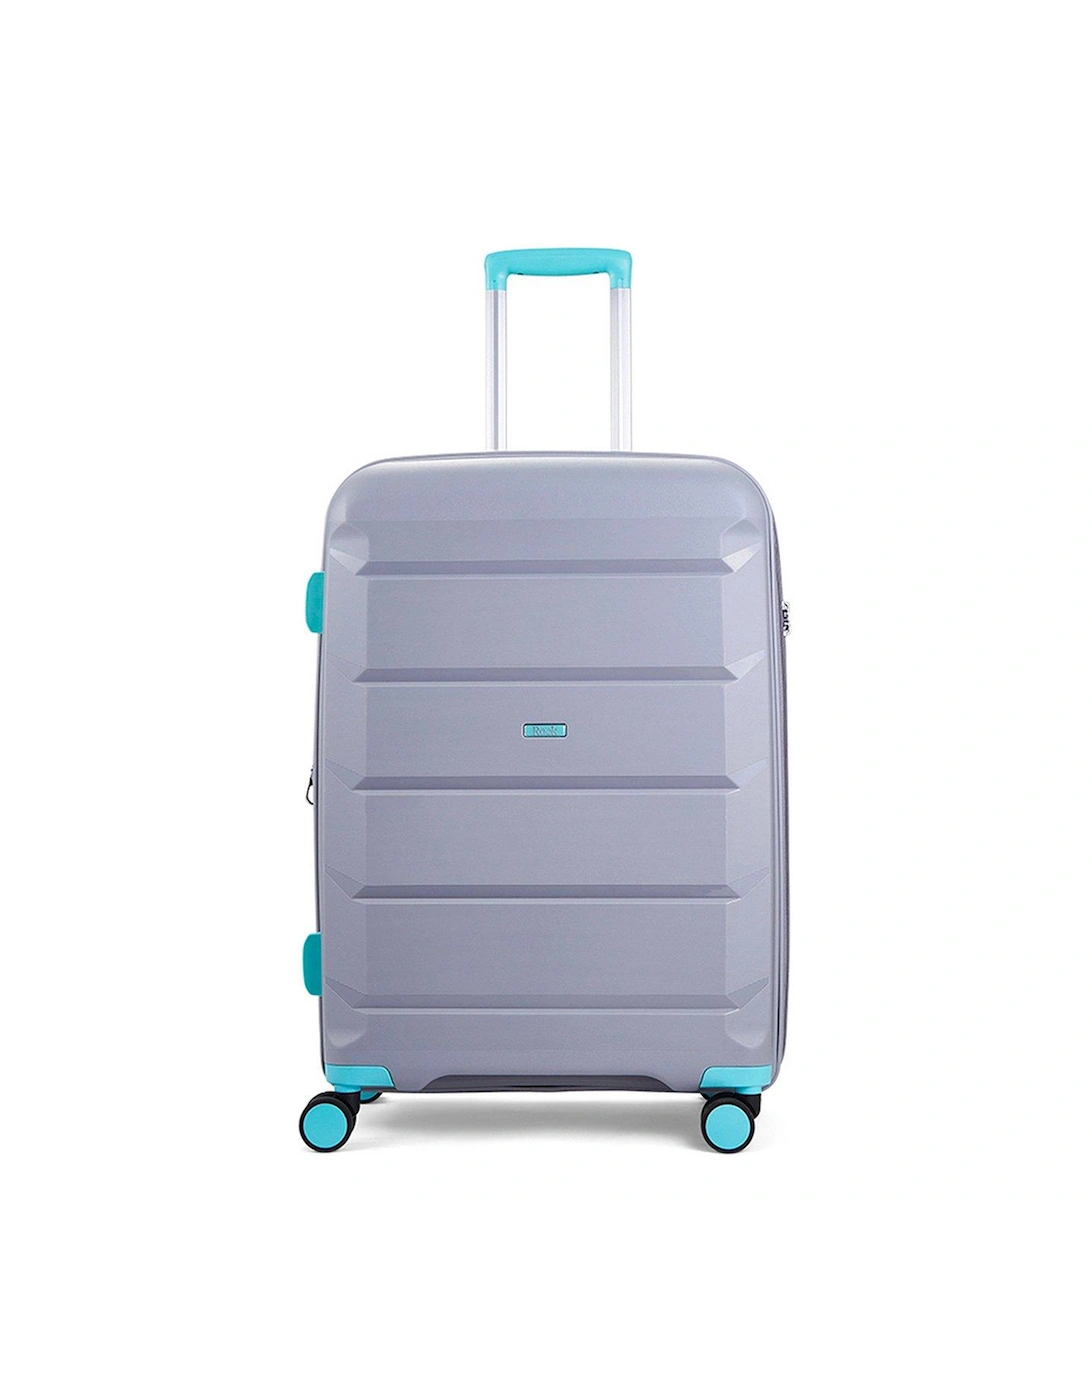 Tulum Hardshell 8-wheel spinner Large Suitcase -Grey/Aqua